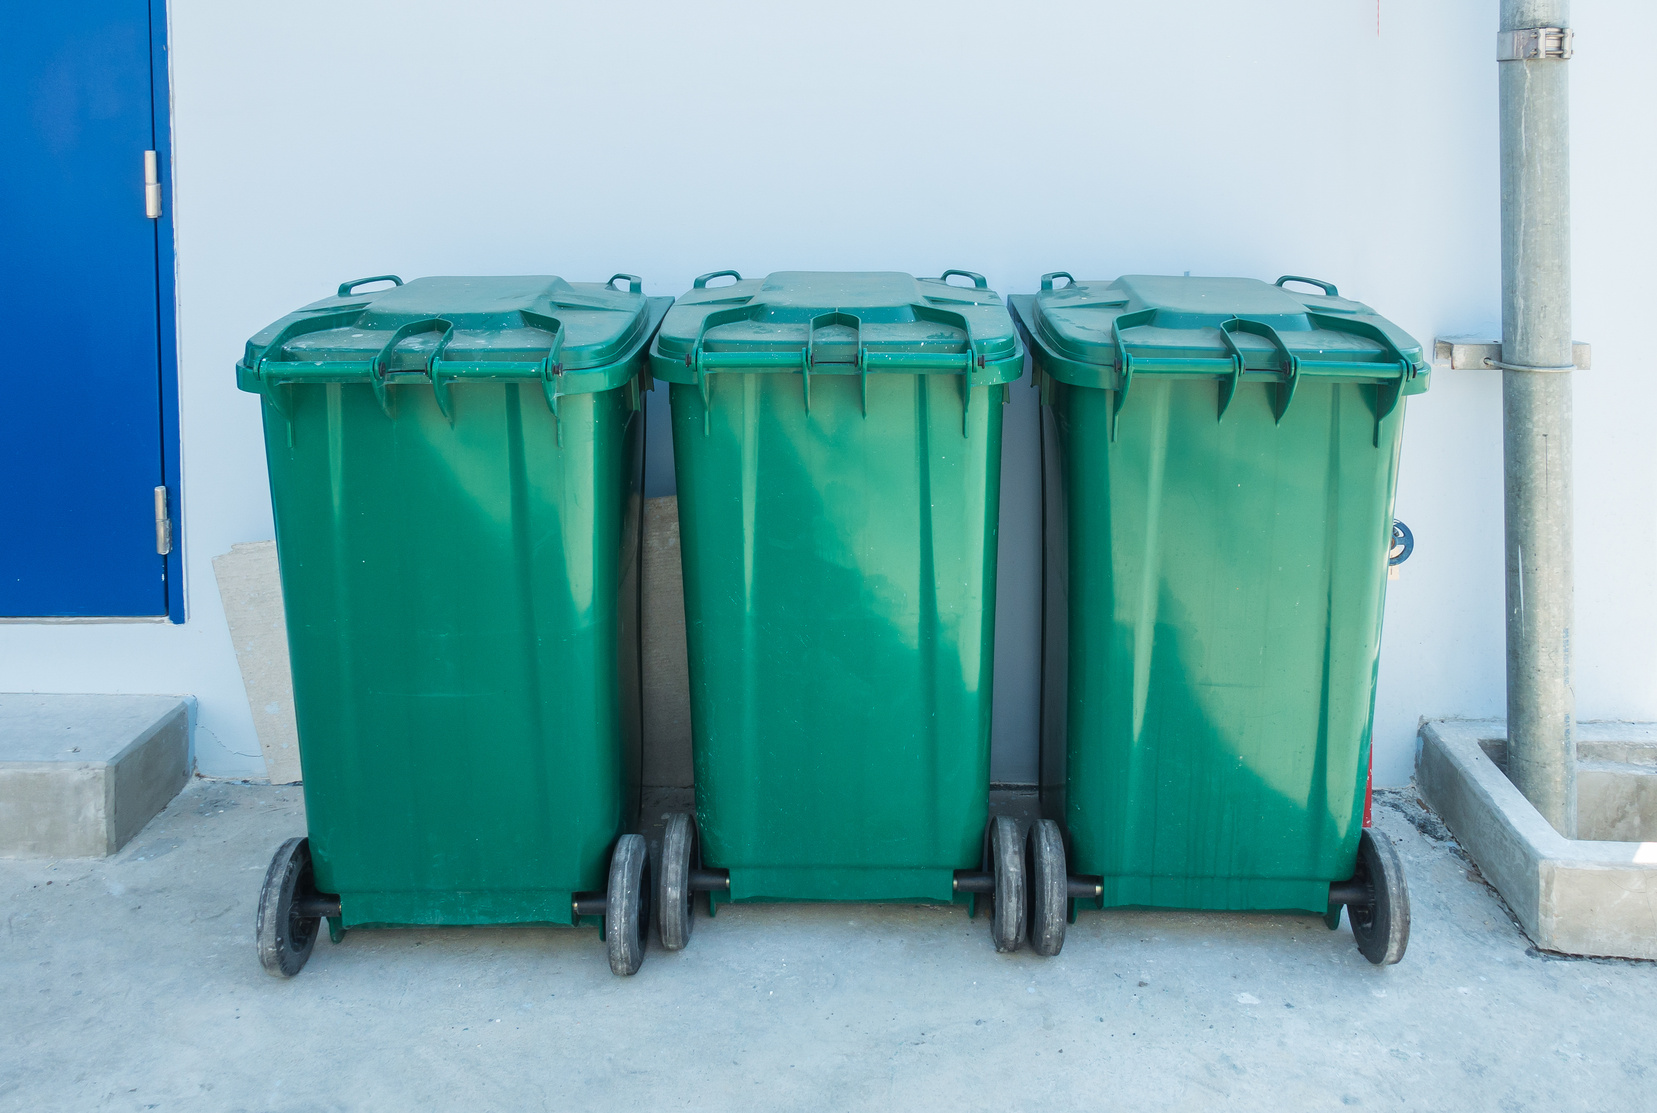 Green recycle bin or three trash bins